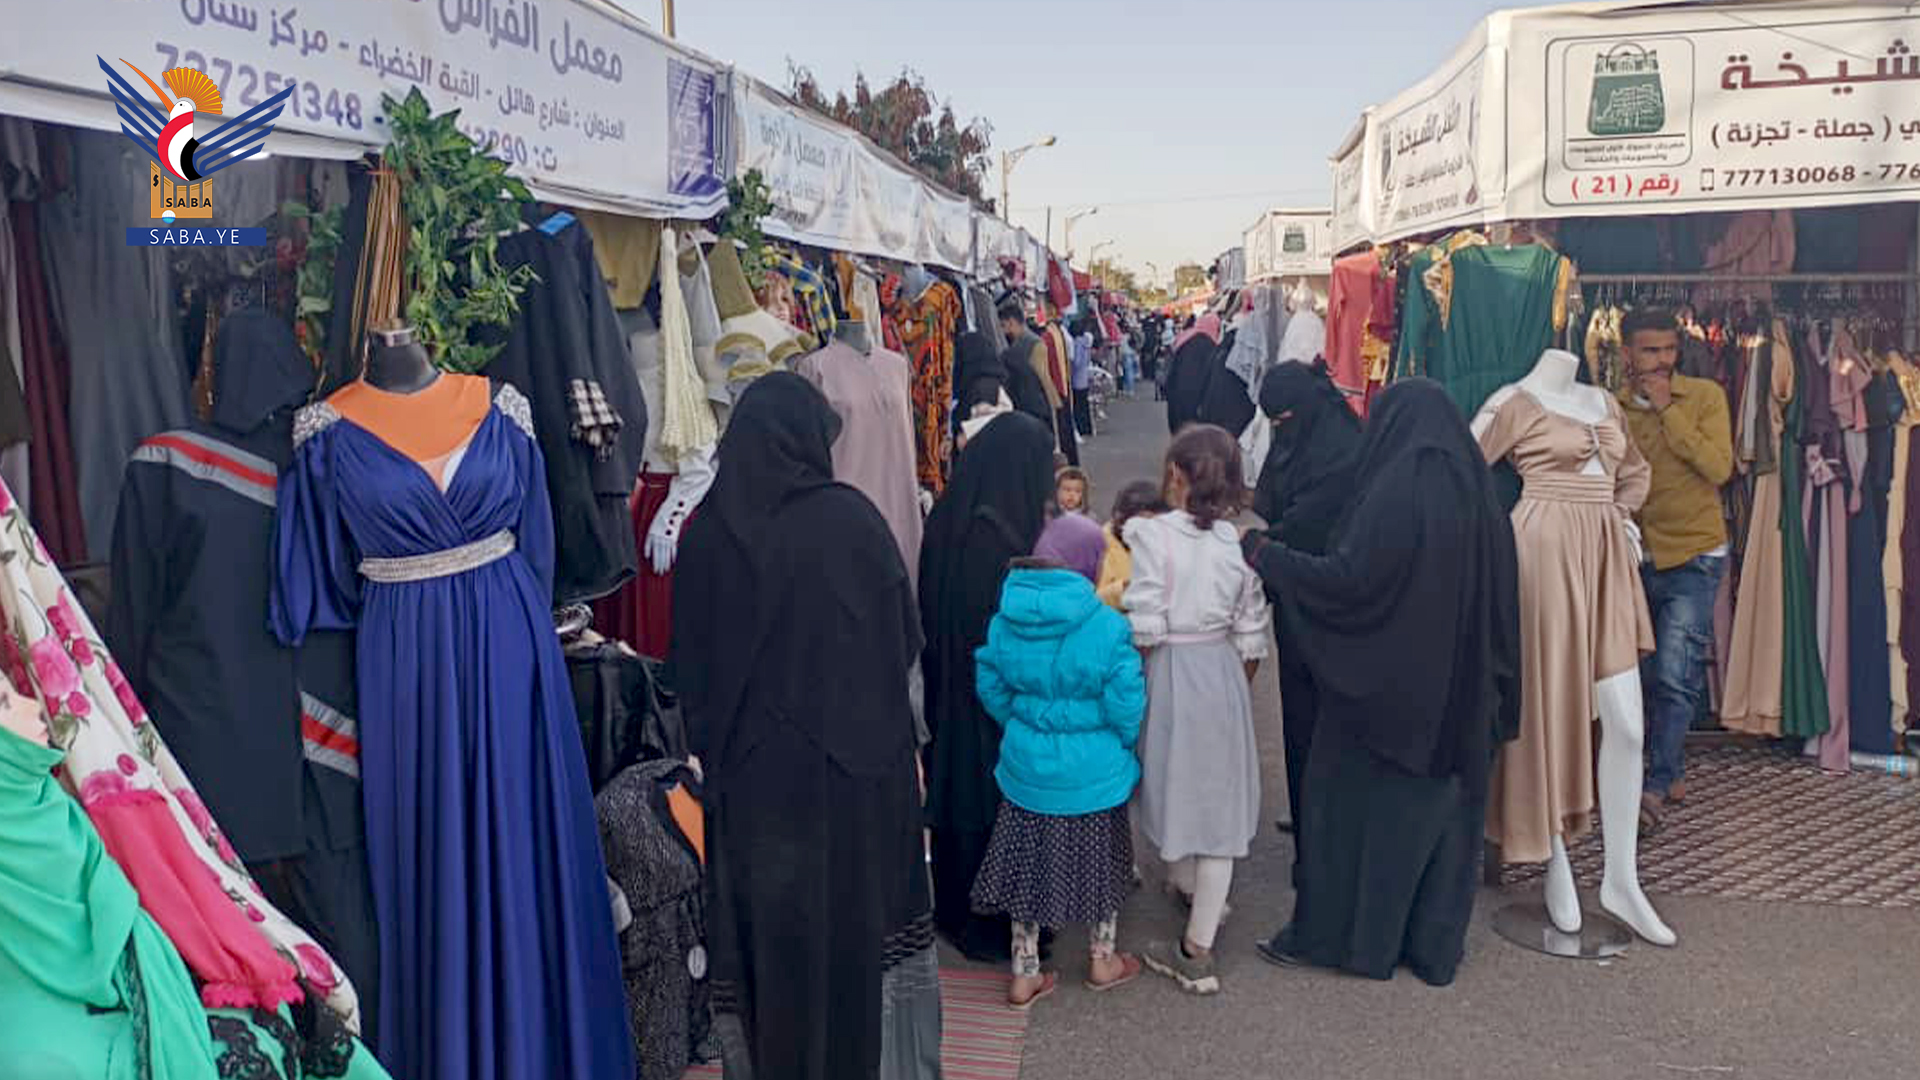 تواصل فعاليات مهرجان التسوق الأول للملبوسات والمنسوجات بصنعاء
